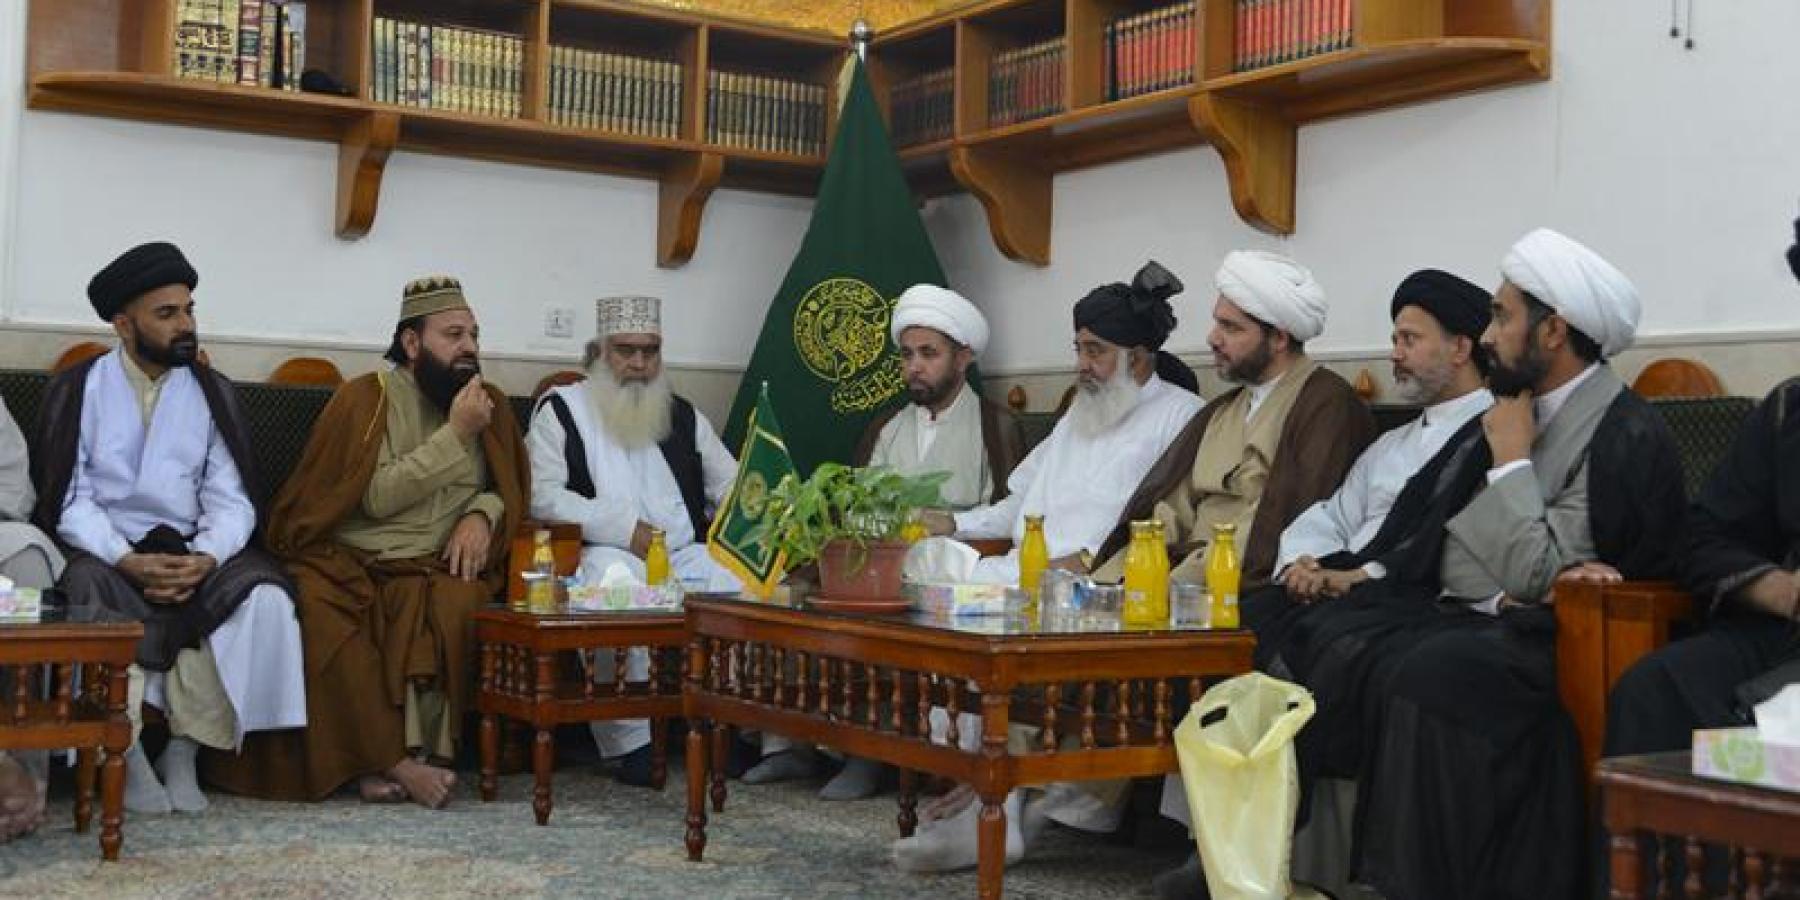 وفد علماء أهل السنة في باكستان يتشرفون بزيارة مرقد أمير المؤمنين (ع)